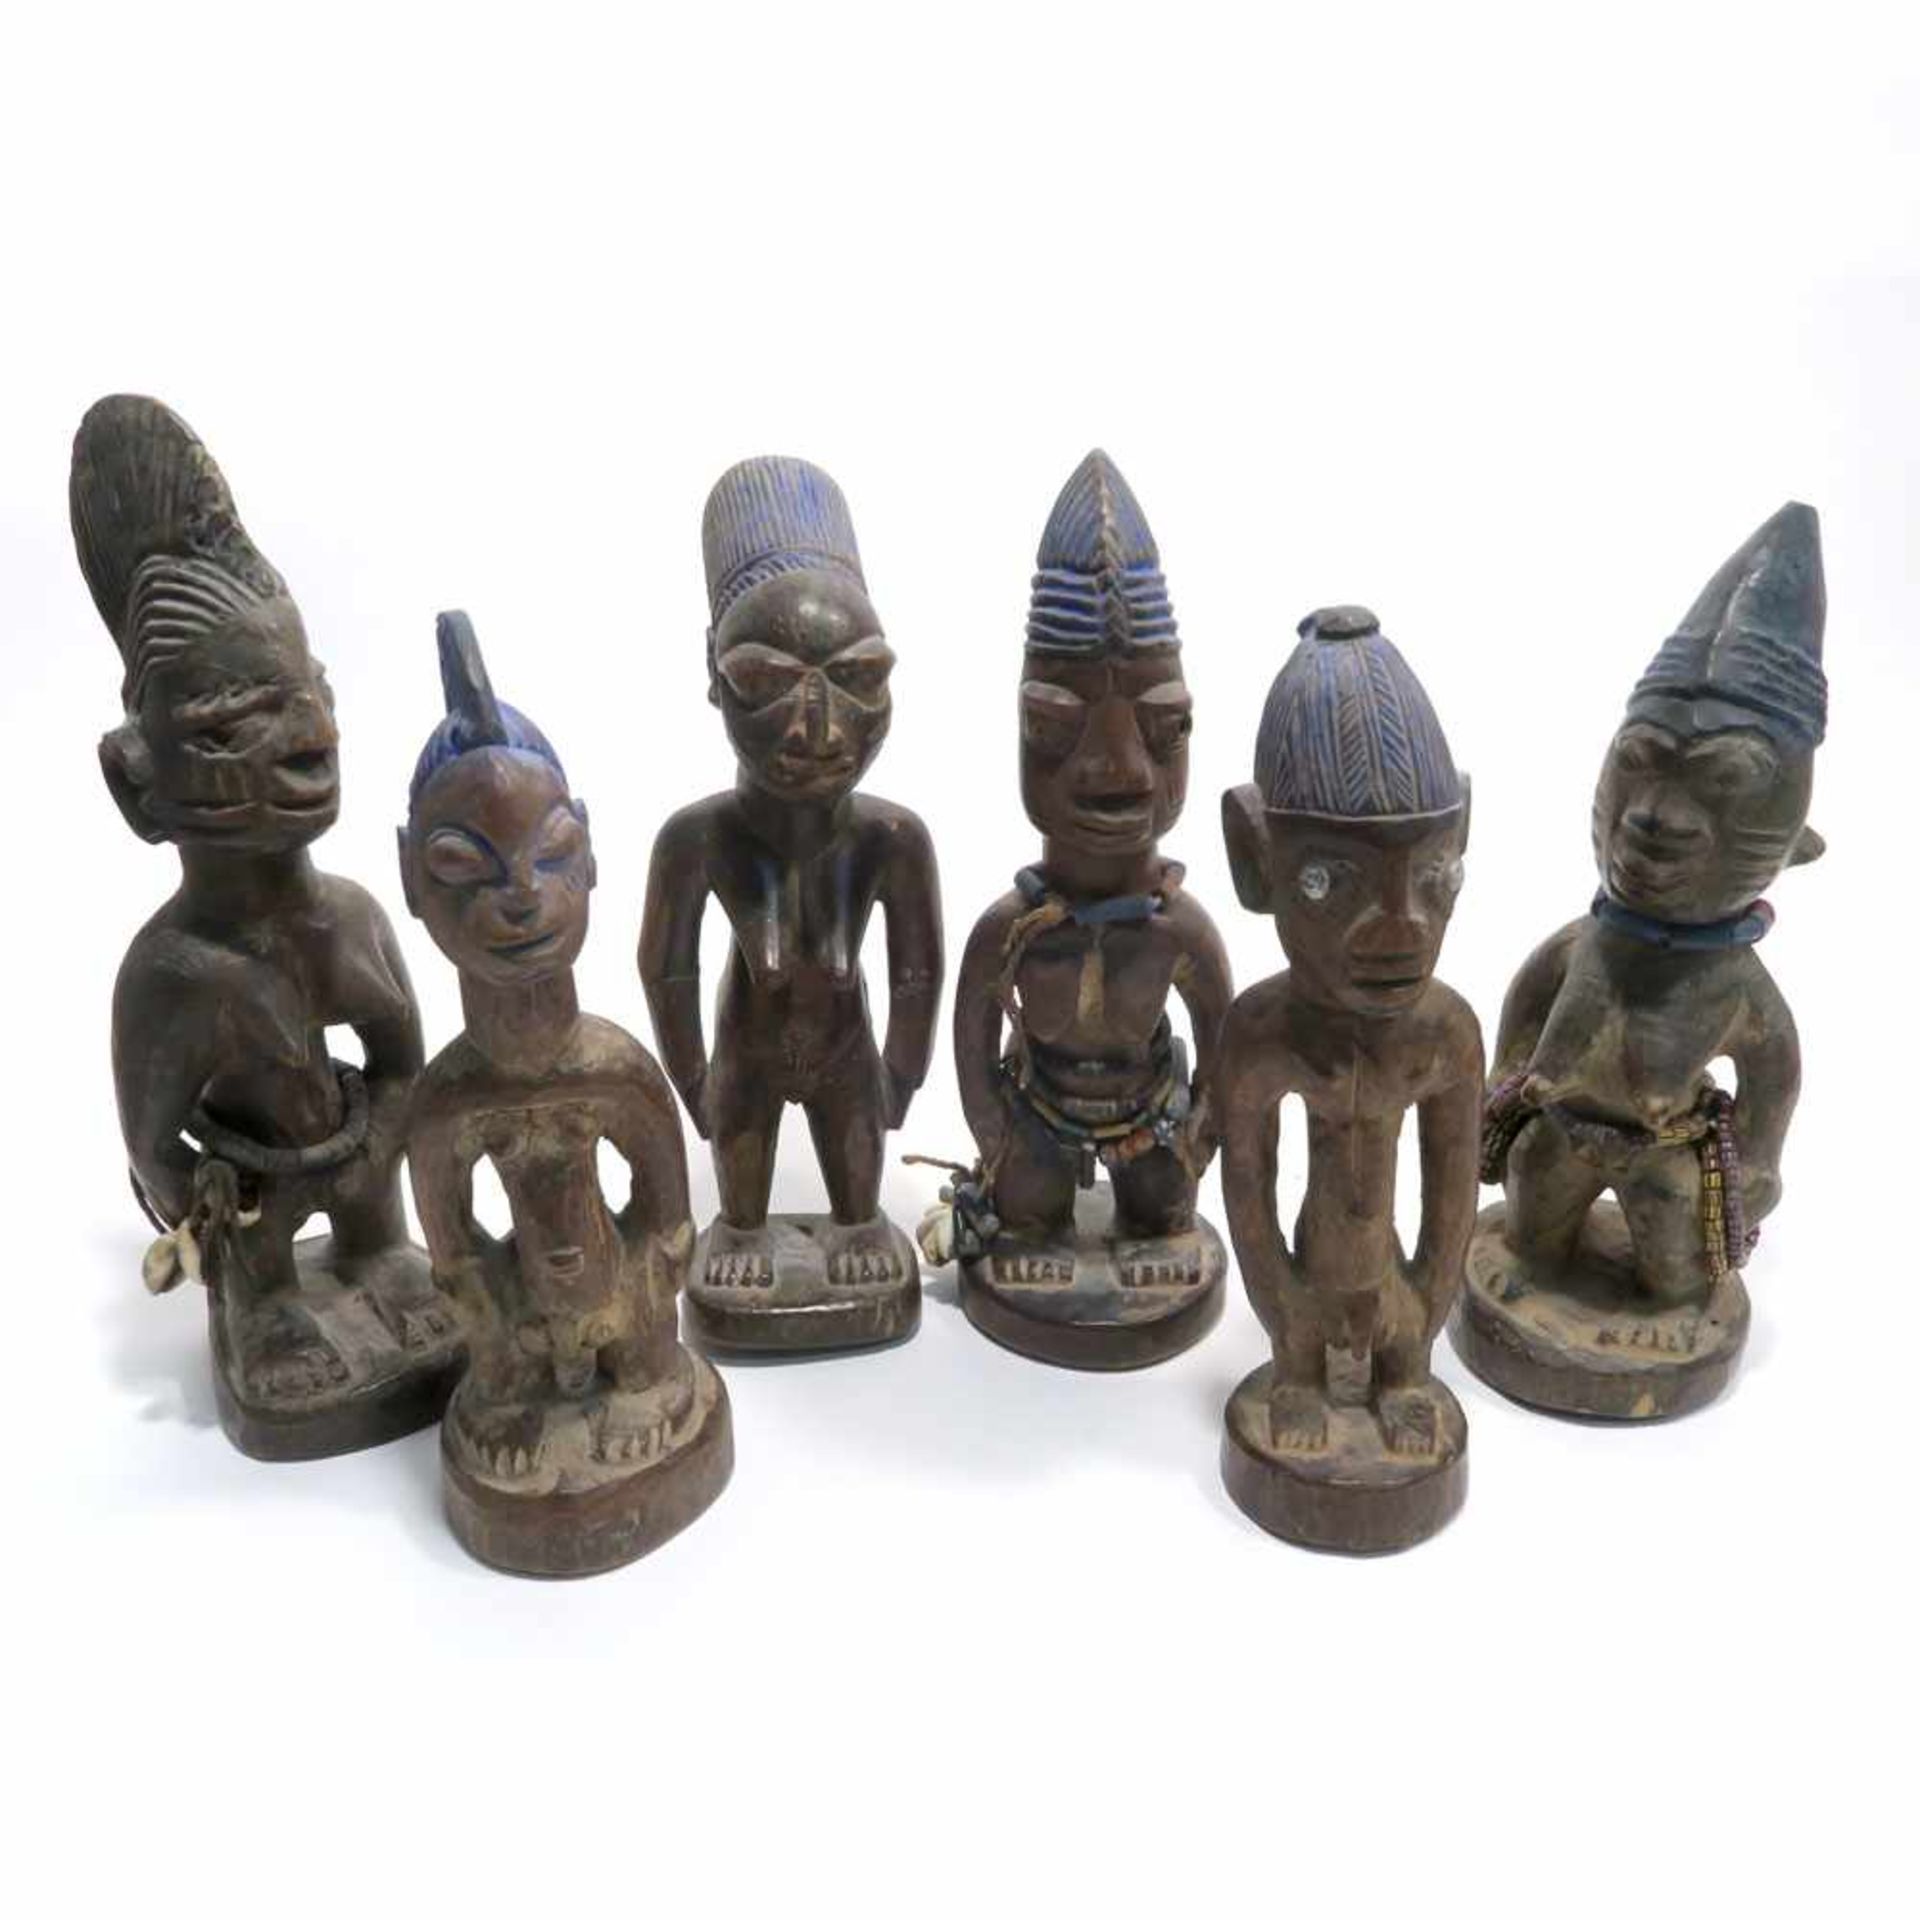 Zwei männliche und vier weibliche Zwillingsfiguren "Ibedji"Yoruba, Nigeria. Holz, geschnitzt, tlw.